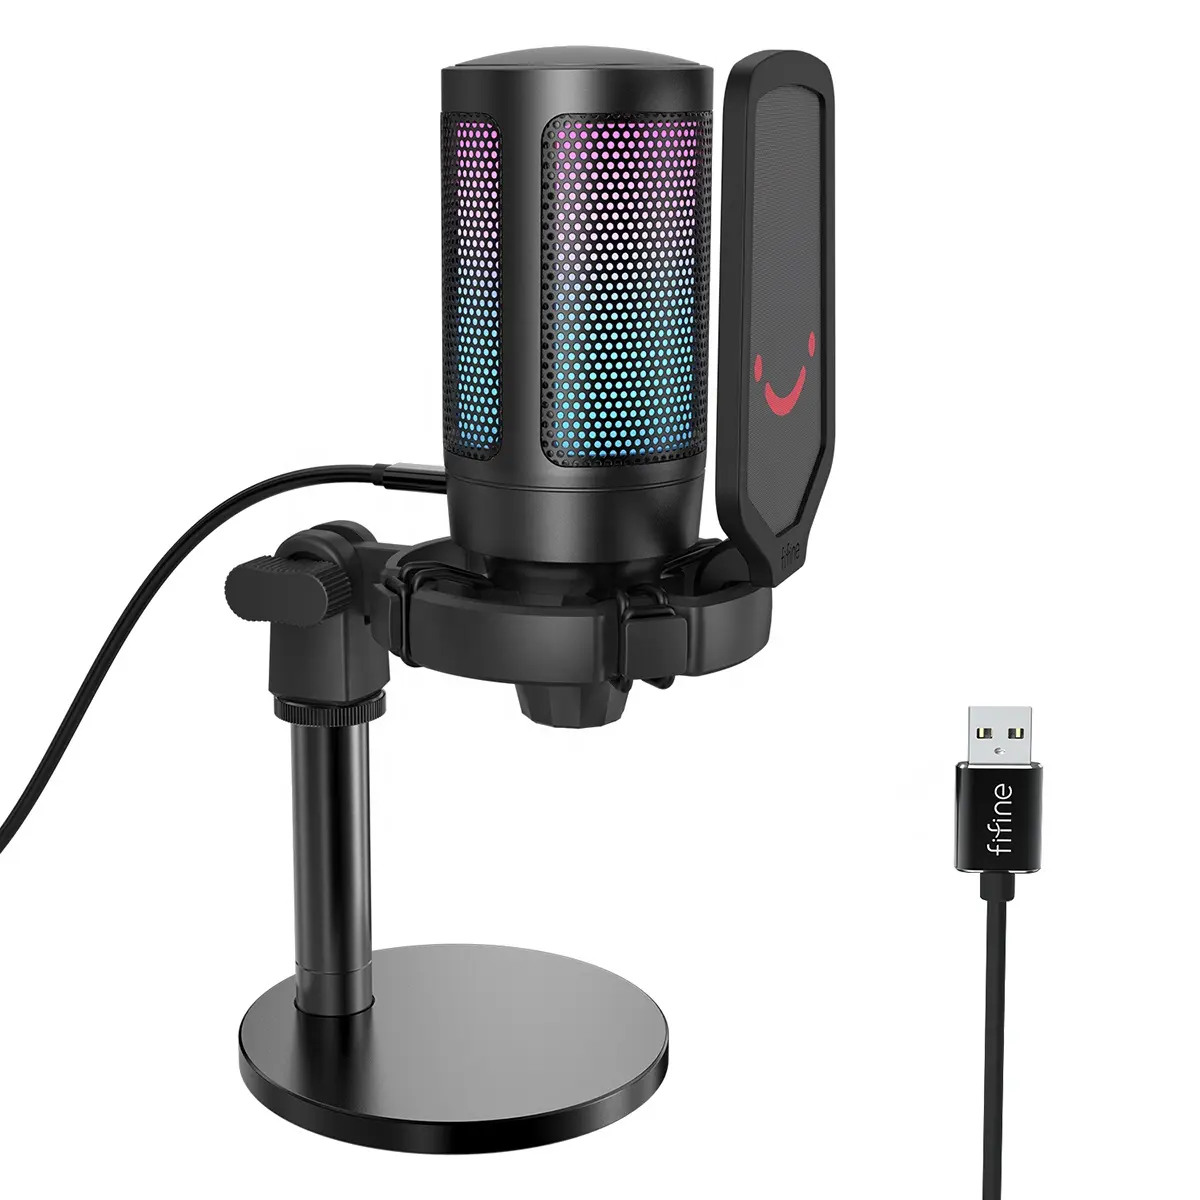 Fifine-micrófono profesional para juegos de Podcasting, amplificador de juego A6, RGB, USB, grabación en directo, nuevo modelo